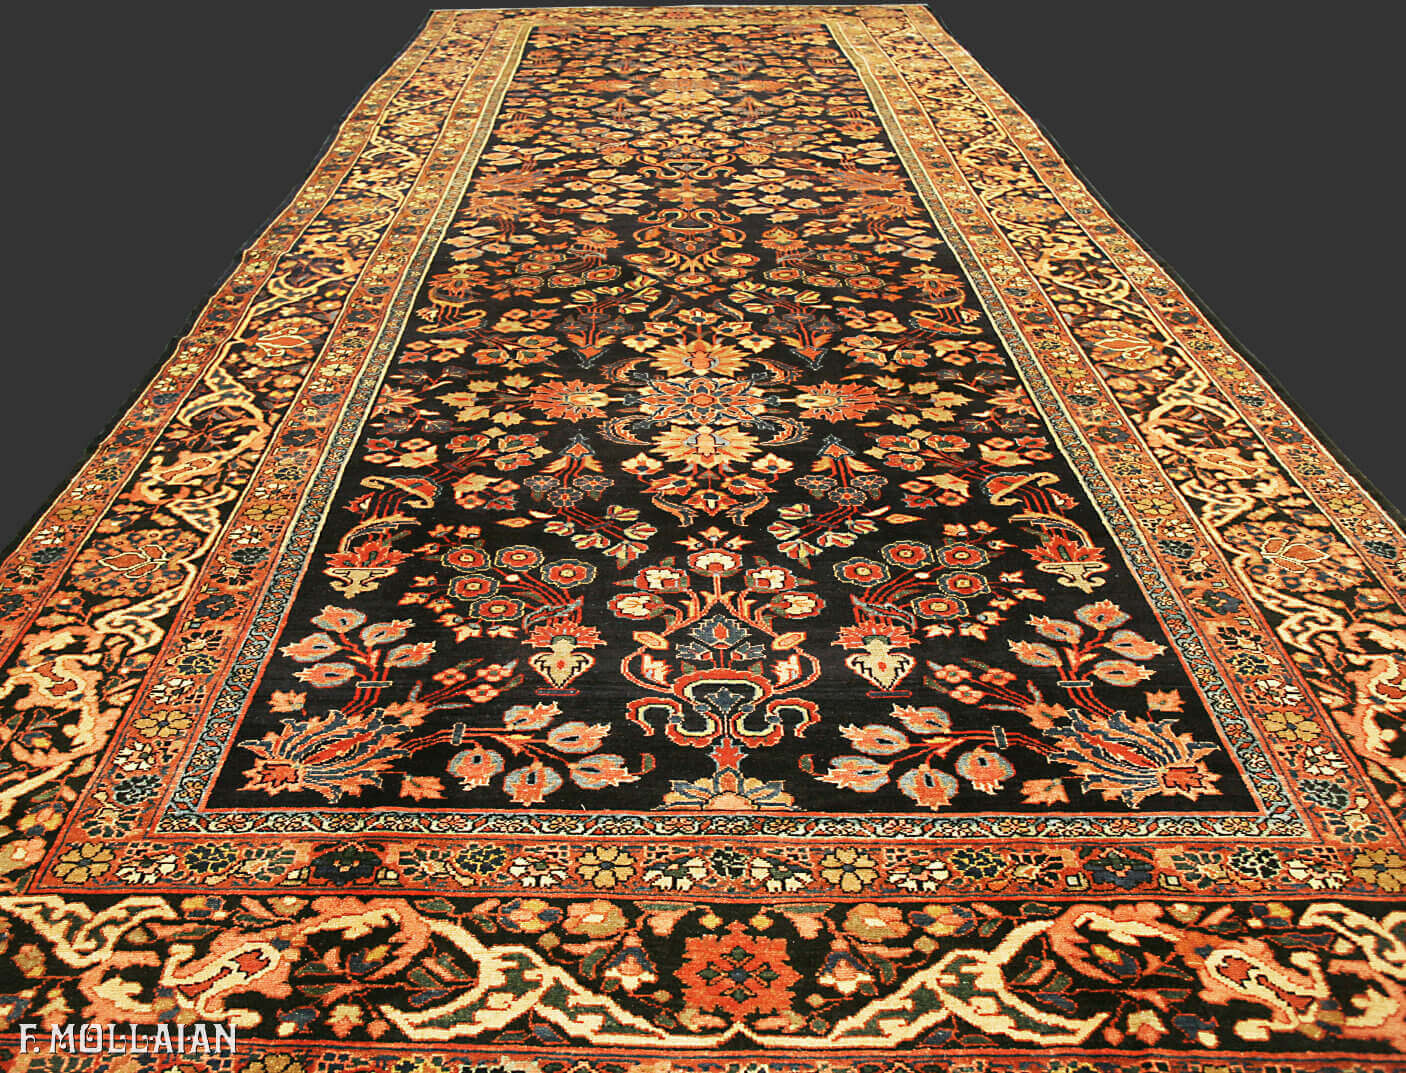 Antique Persian Hamedan Gallery Carpet n°:49370413